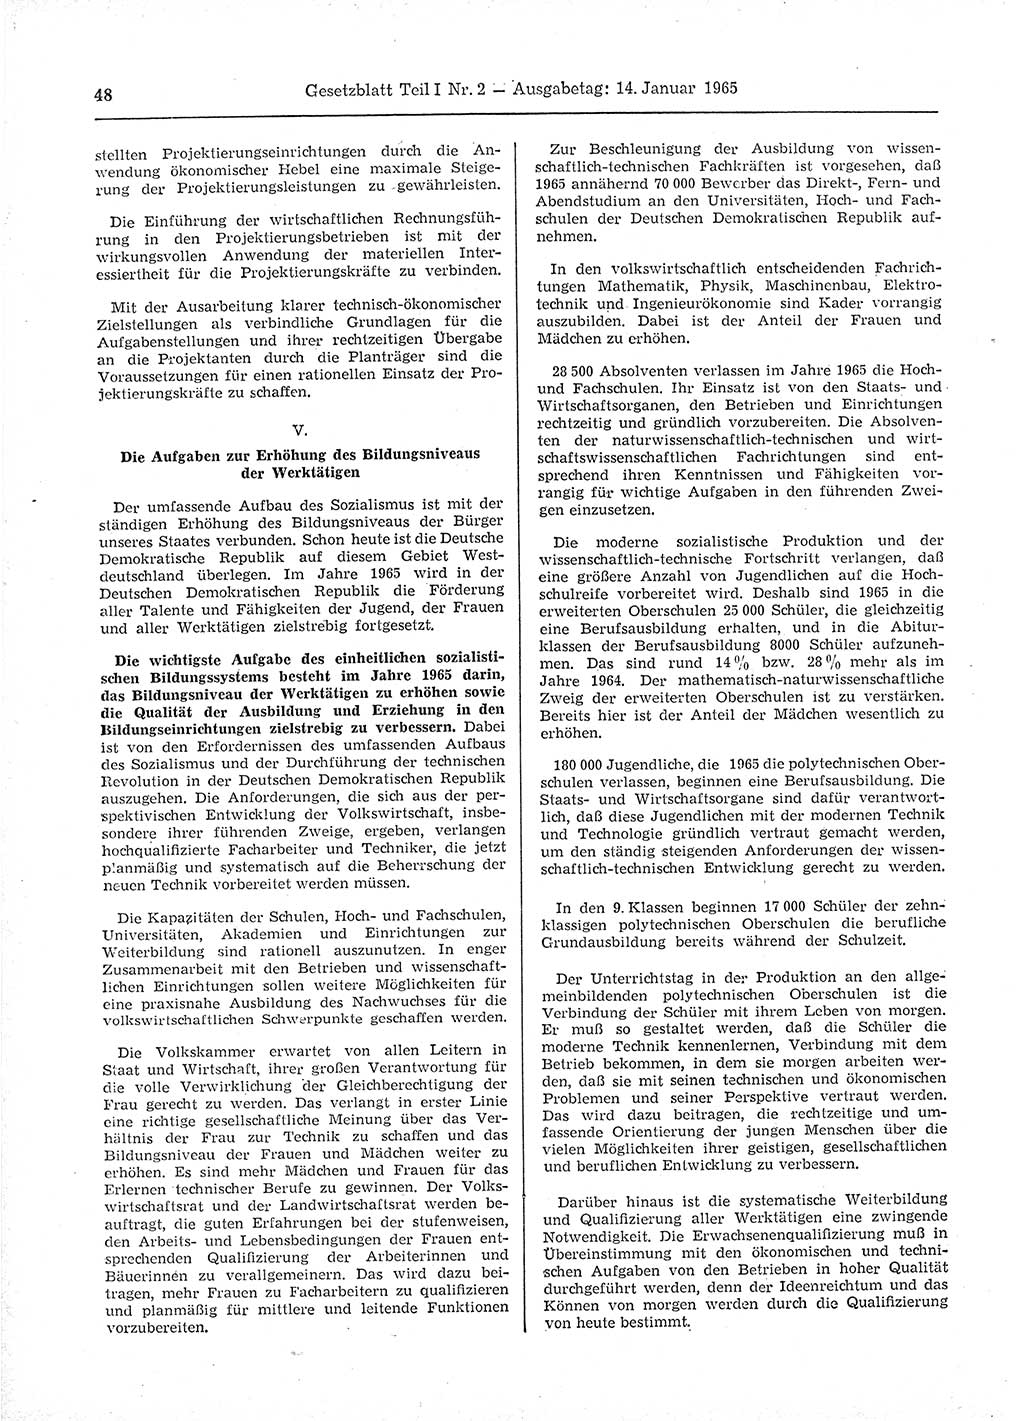 Gesetzblatt (GBl.) der Deutschen Demokratischen Republik (DDR) Teil Ⅰ 1965, Seite 48 (GBl. DDR Ⅰ 1965, S. 48)